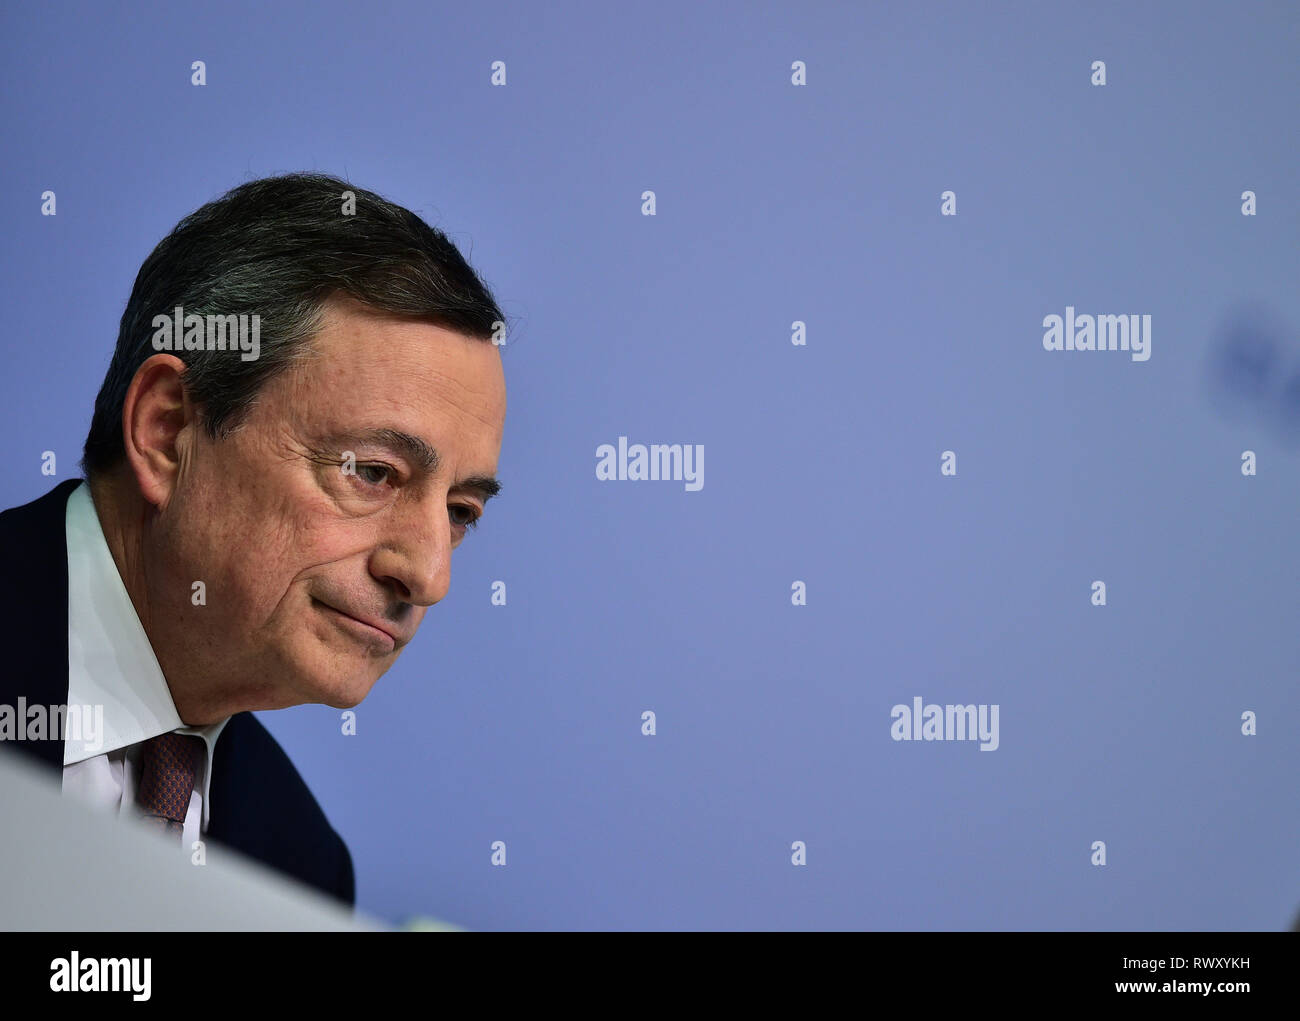 Francfort, Allemagne. 7 mars, 2019. Banque centrale européenne (BCE) Mario Draghi Président assiste à une conférence de presse au siège de la BCE à Francfort, Allemagne, le 7 mars 2019. Crédit : Yang Lu/Xinhua/Alamy Live News Banque D'Images